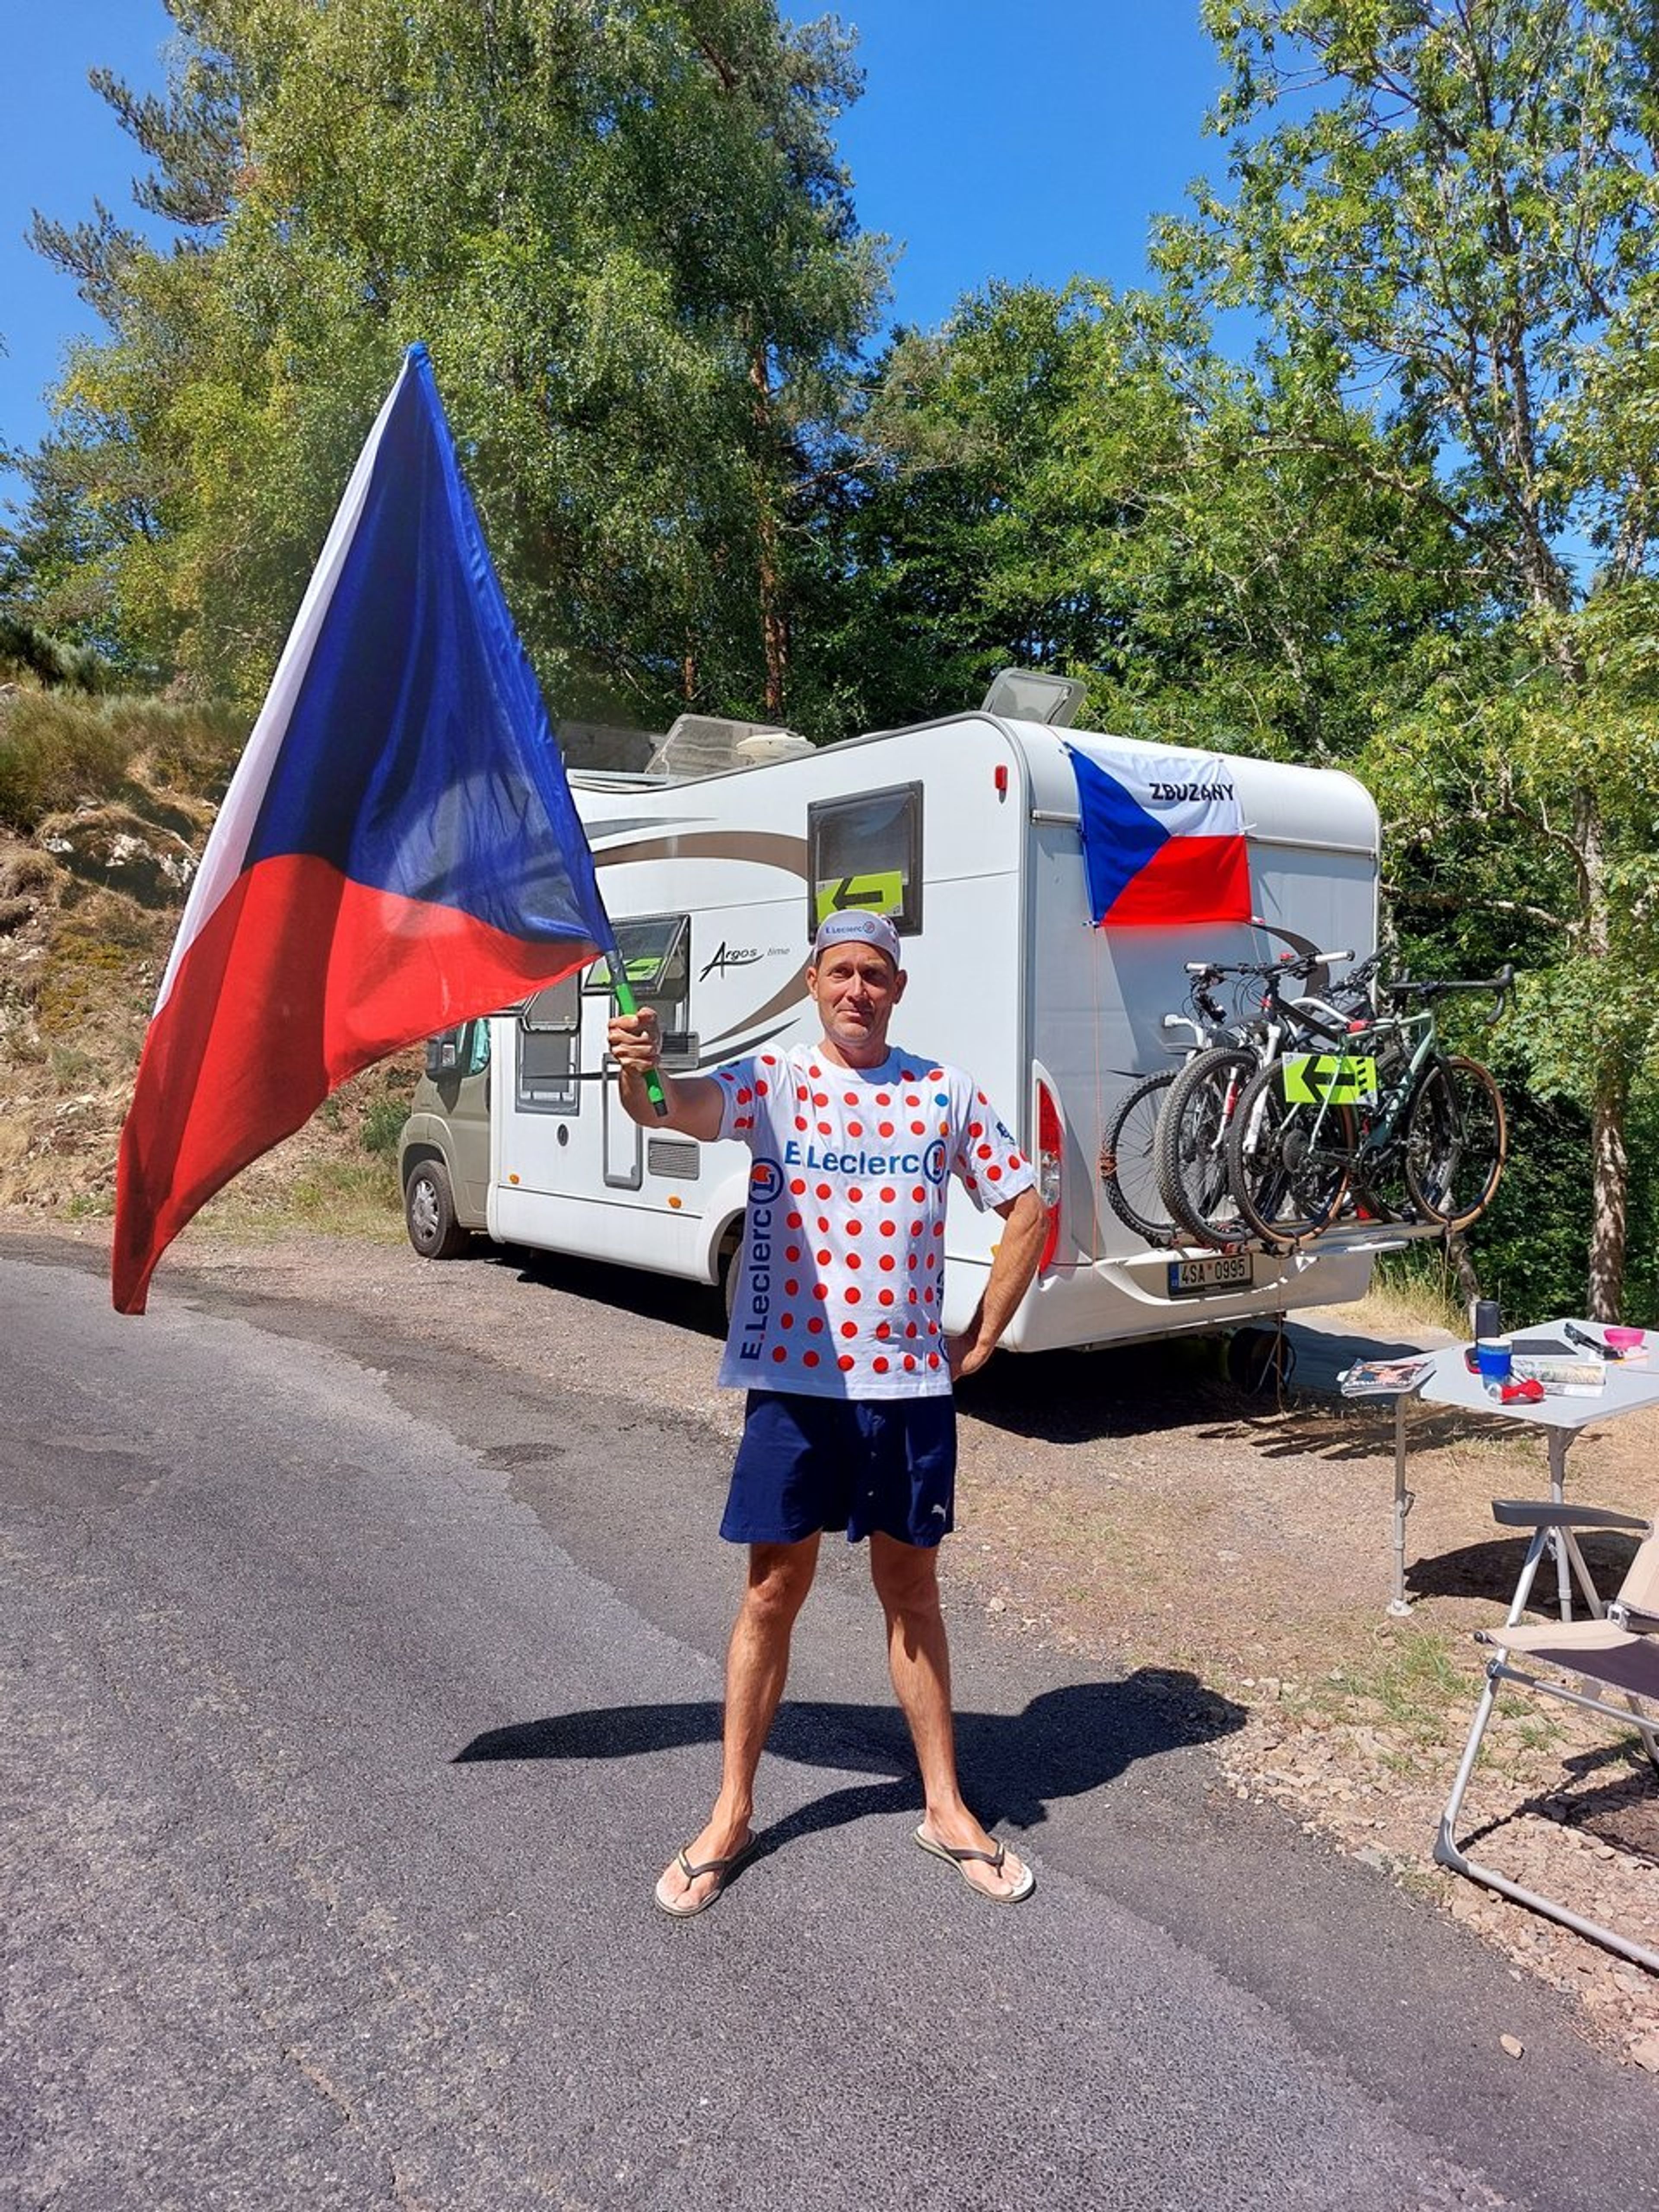 Vlajky jsou základ, i když v peletonu nejede žádný český cyklista. Ředitel závodu na nás křičel AHÓJ.